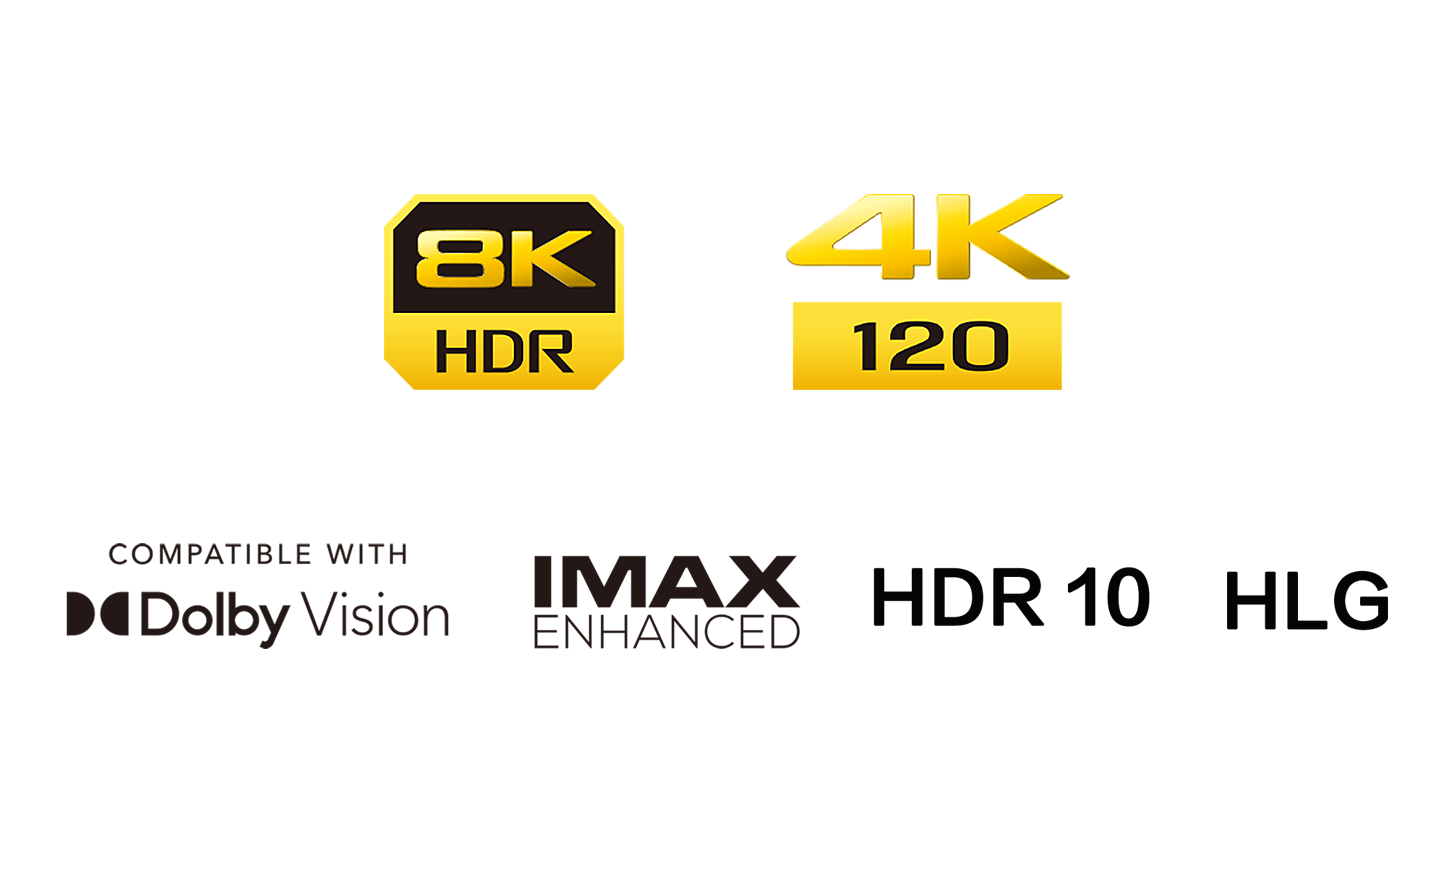 8K HDR 標誌、4K 120 標誌、與 Dolby Vision 相容標誌、HDR 10 標誌、IMAX Enhanced 標誌、HLG 標誌